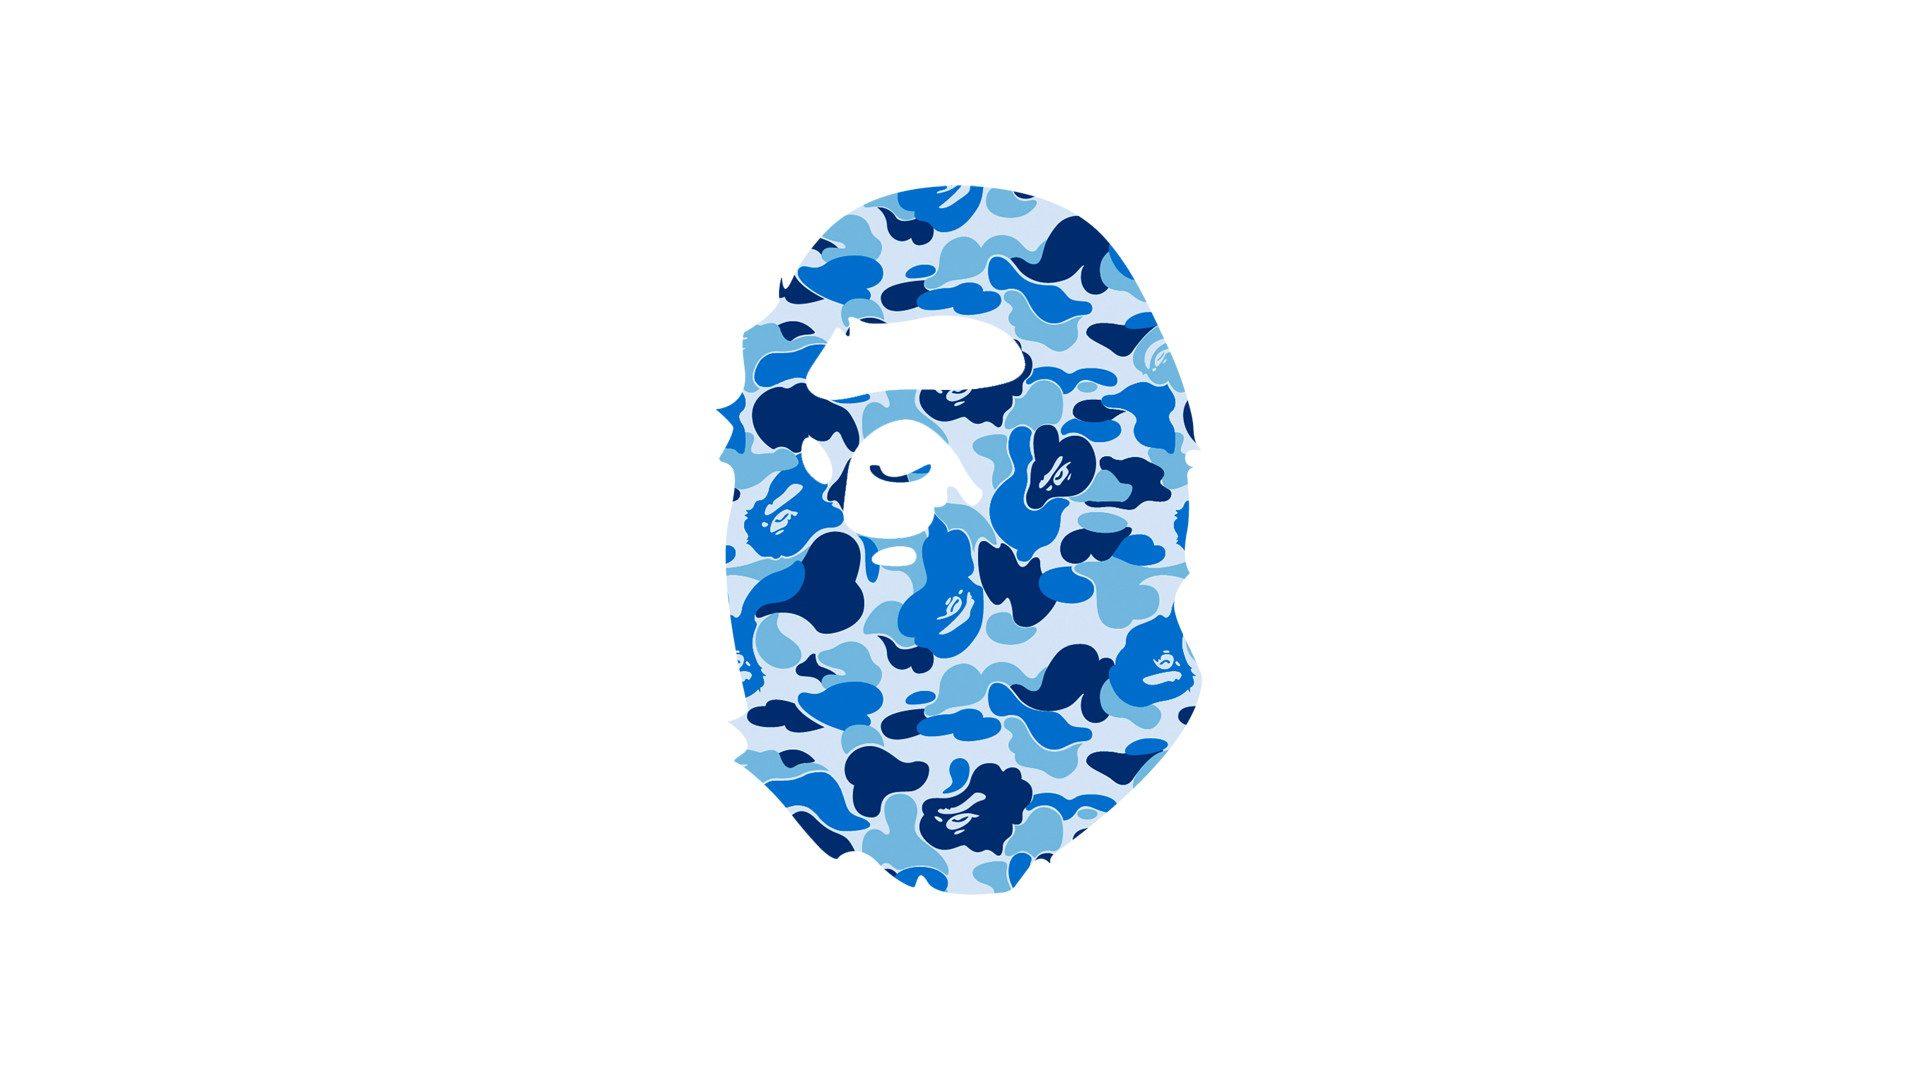 White Bathing Ape Logo - Cool Bathing Ape Logo Wallpaper In Plain White Background | PaperPull